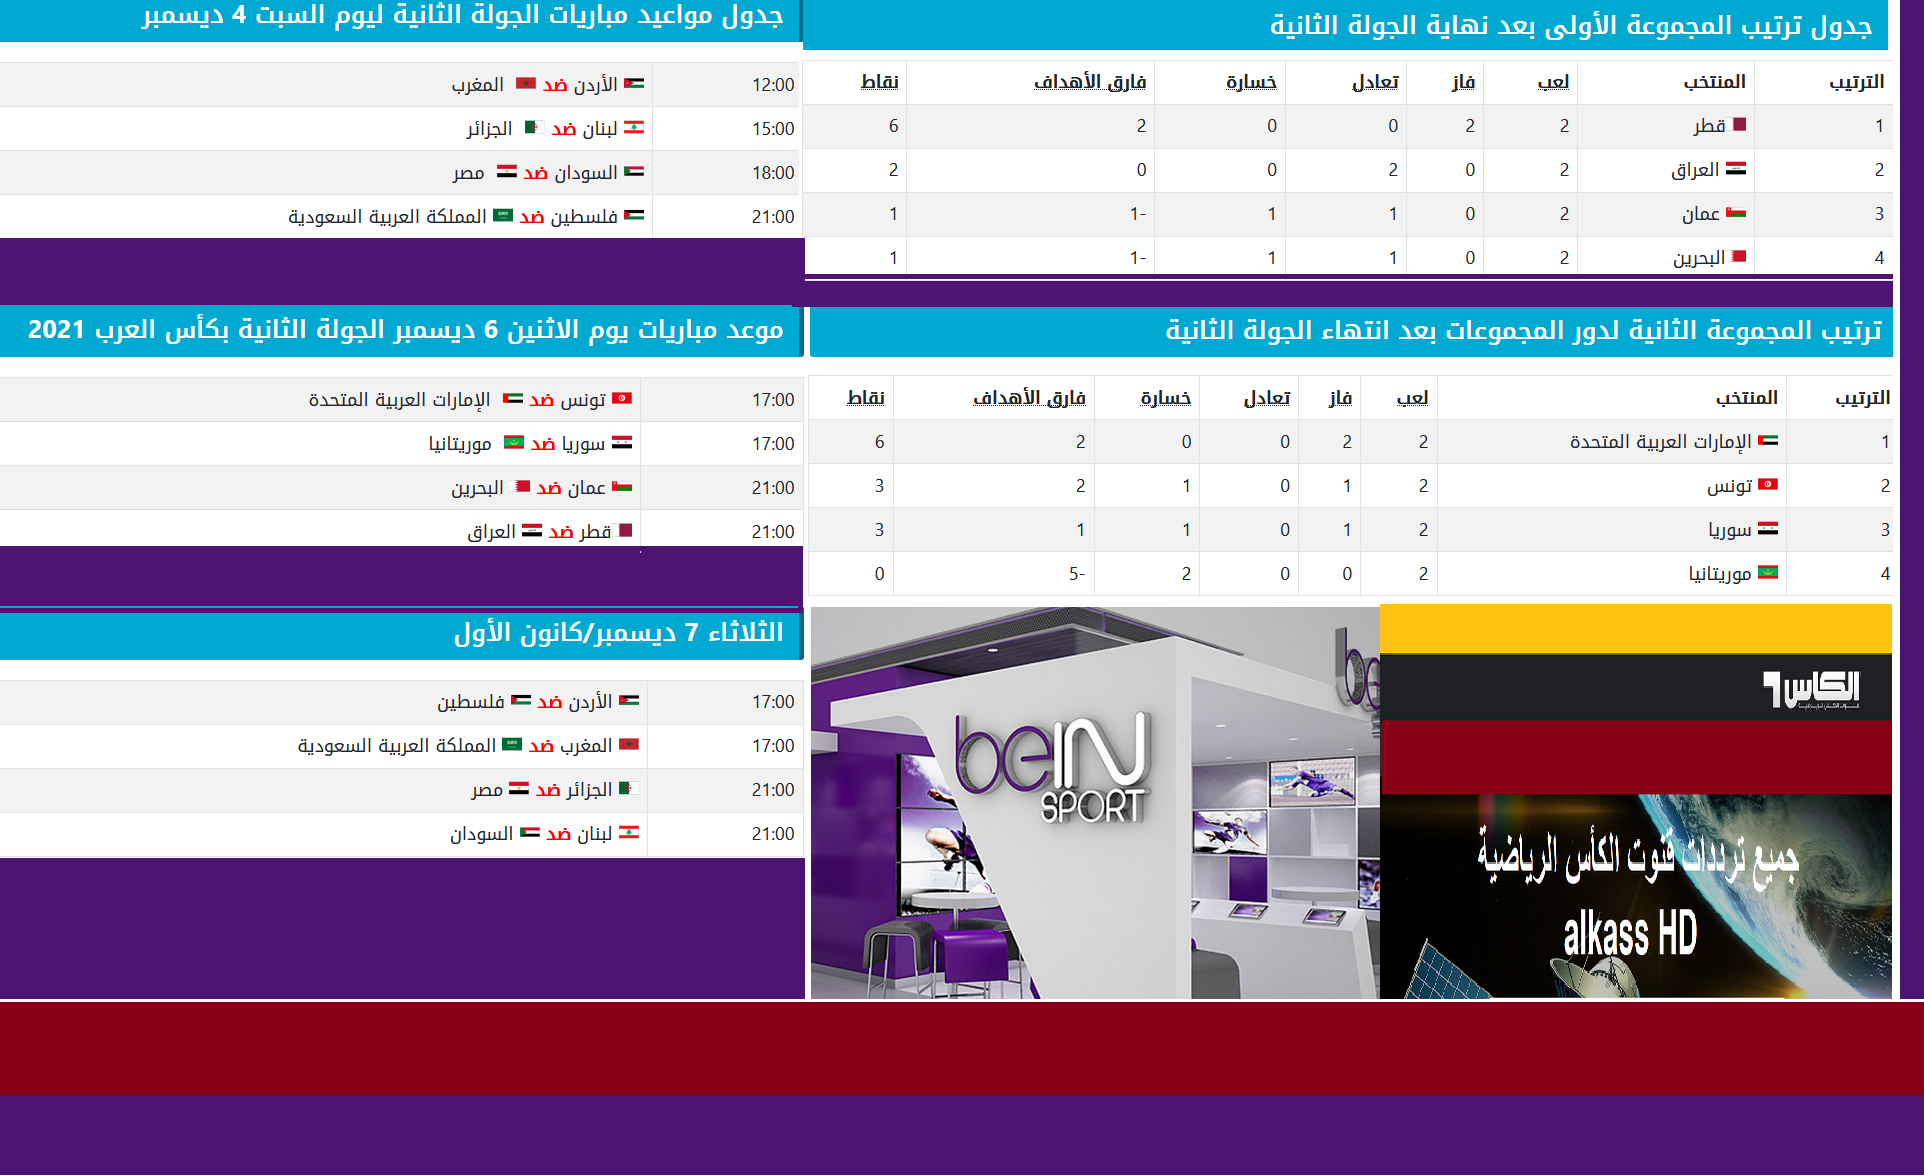 تردد قناة beIN Sports HD المجانية 1 و 2 رابط الموقع الرسمي لكواليس وموعد ونتائج المباريات وترتيب المجموعات